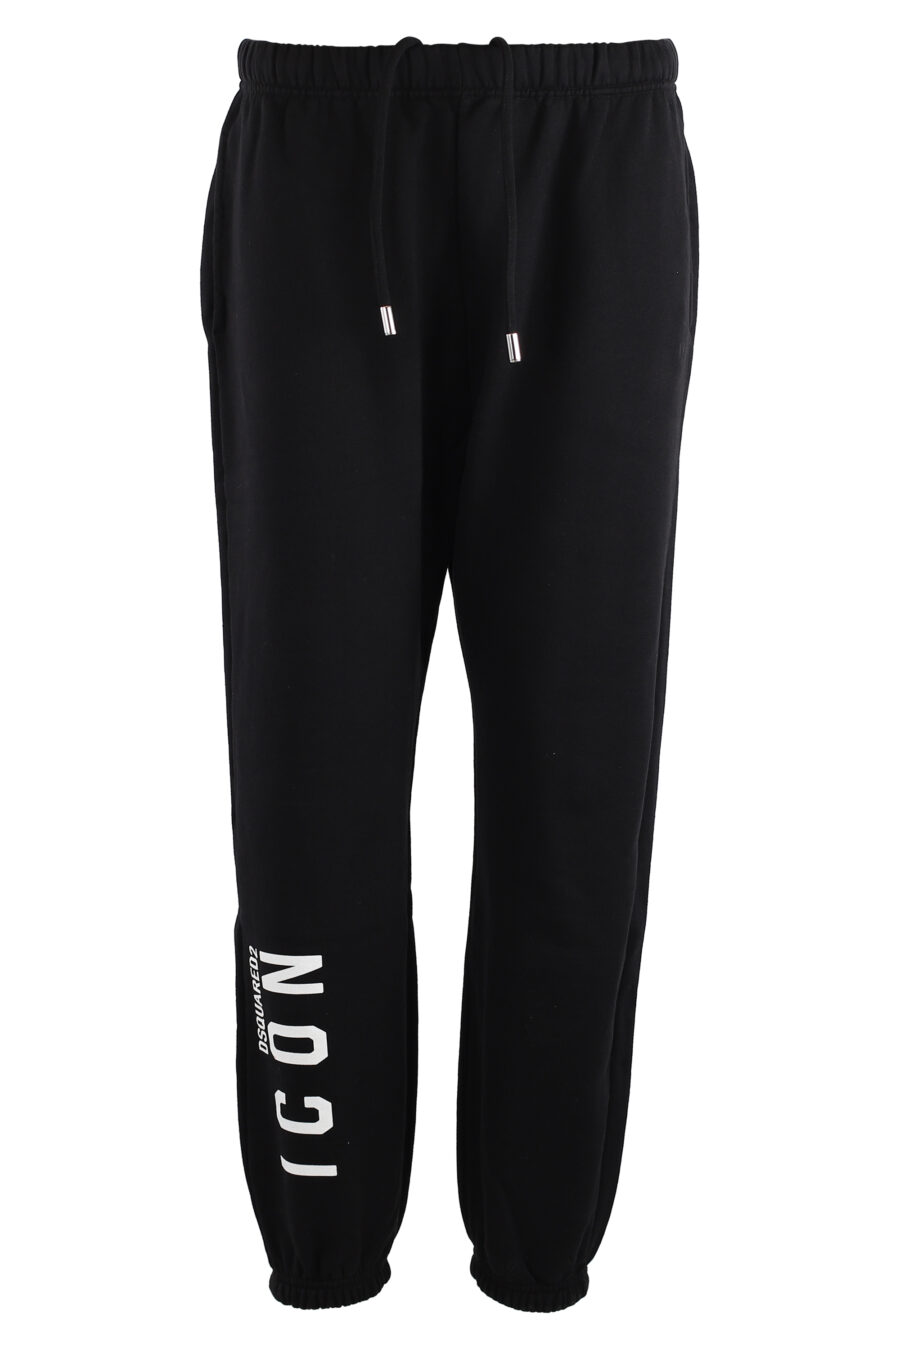 Pantalón de chándal negro con logo "icon" vertical - IMG 7571